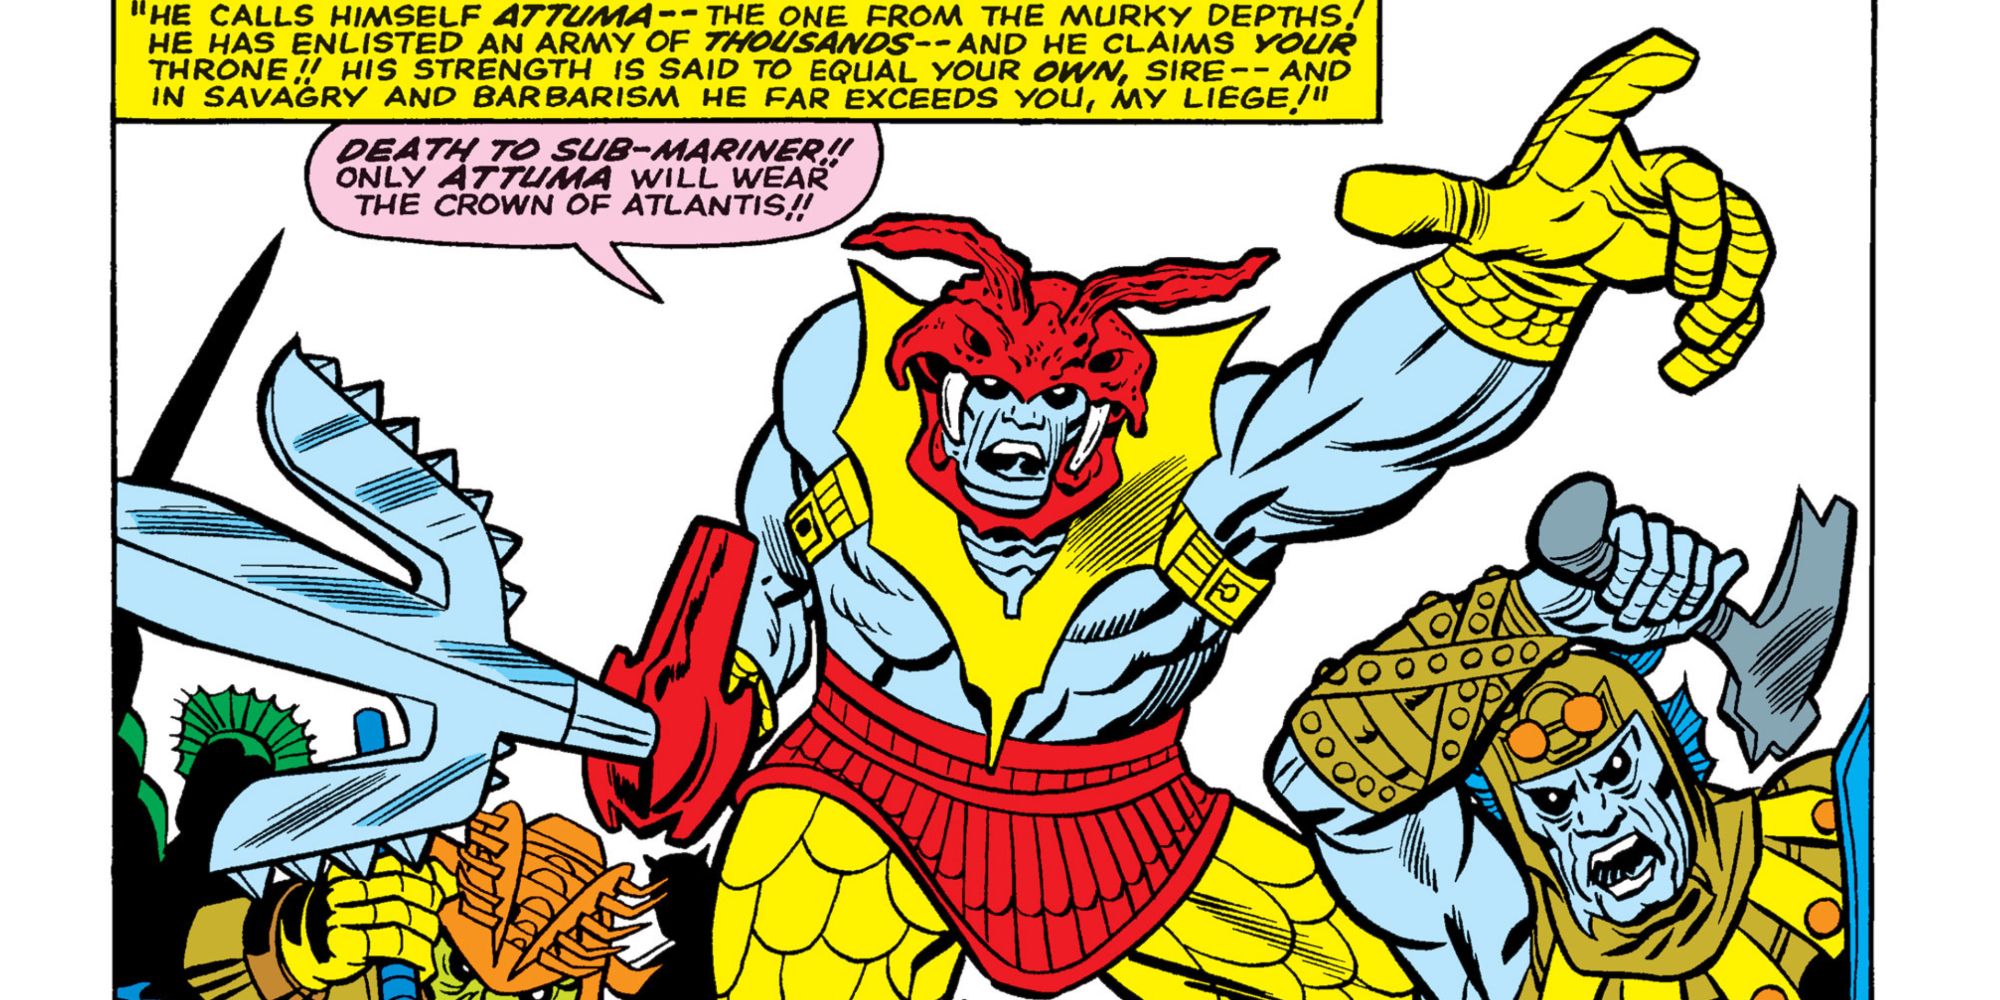 Attuma attacks in Marvel Comics.